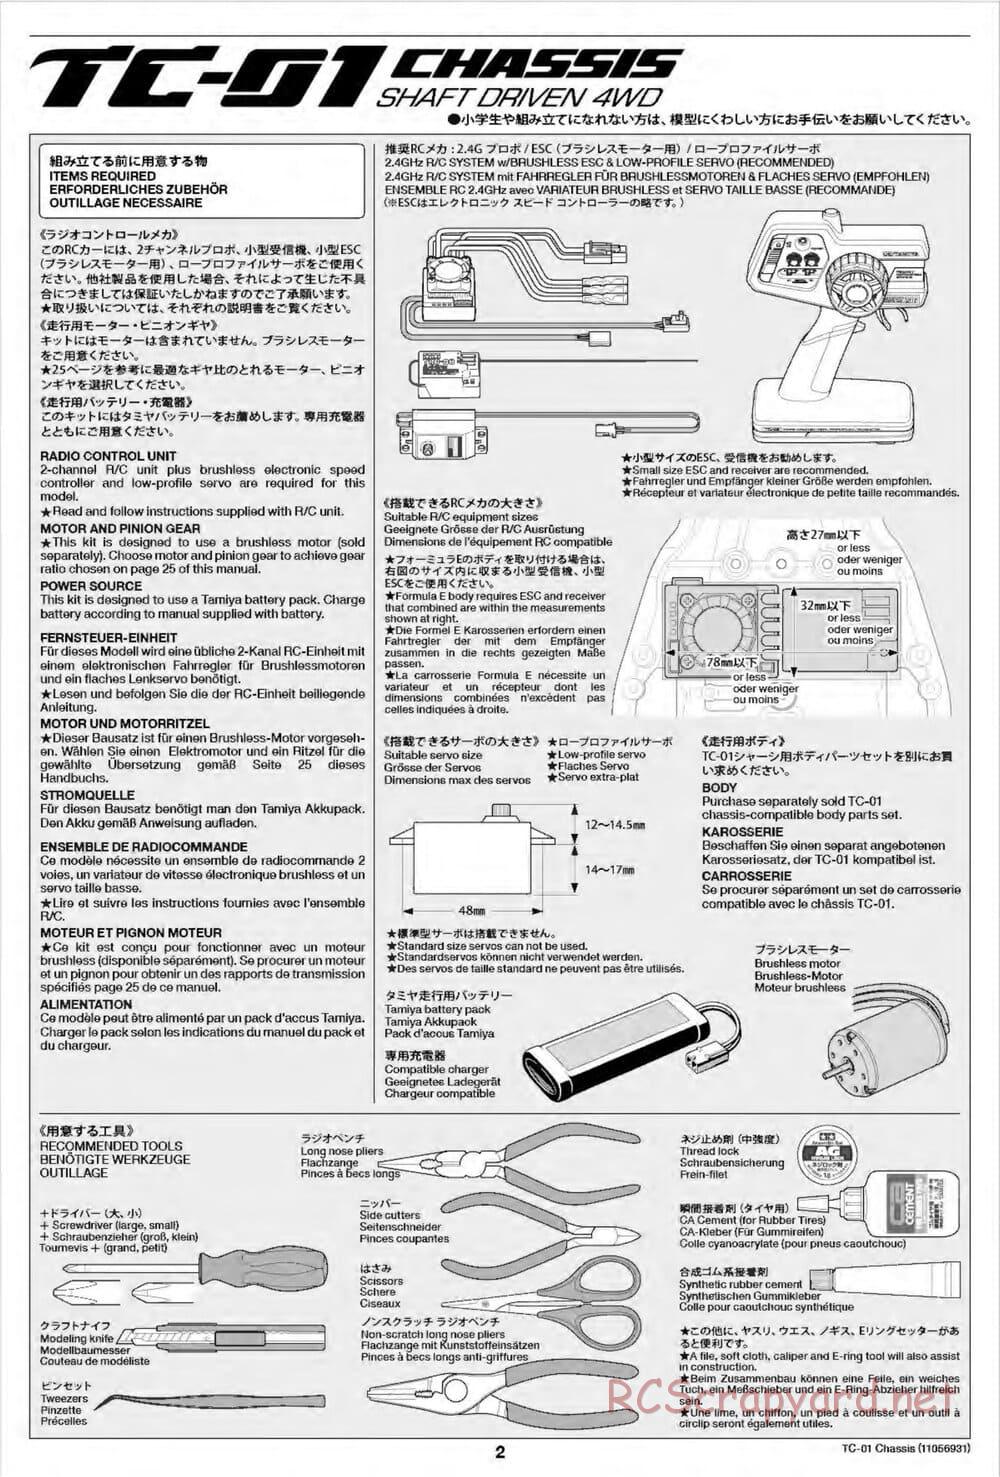 Tamiya - TC-01 Chassis - Manual - Page 2